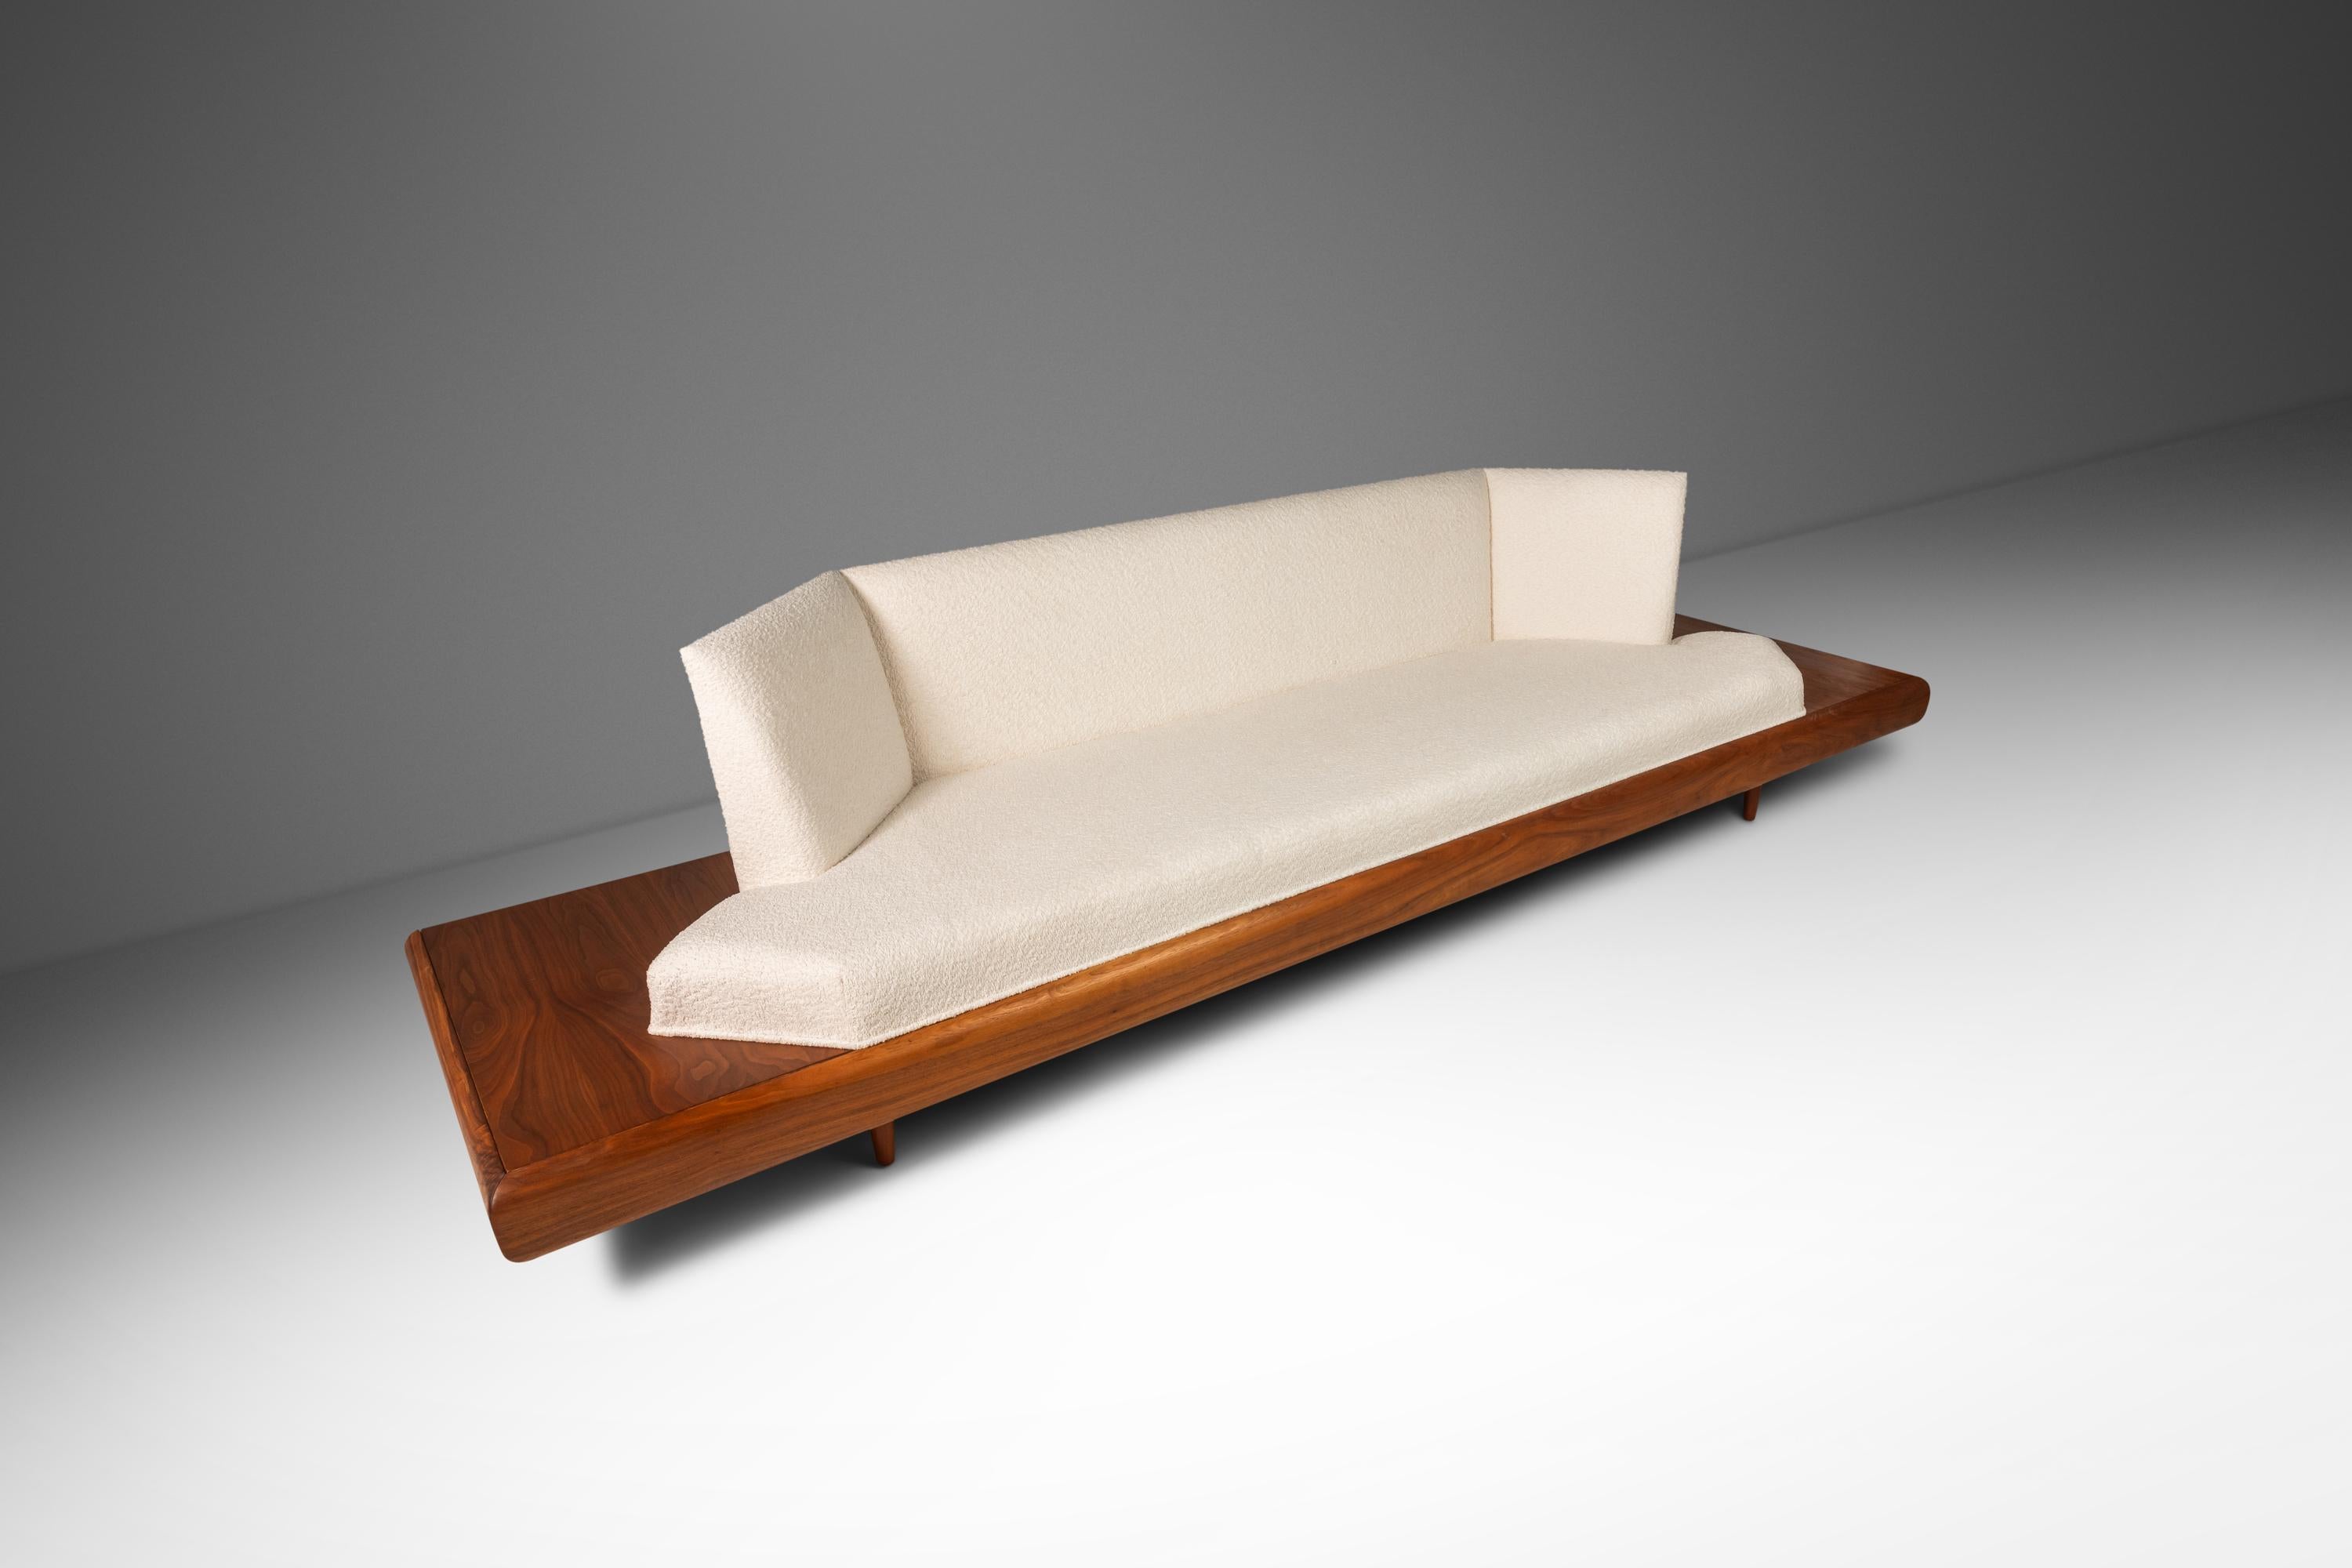 Das von dem unvergleichlichen Adrian Pearsall entworfene kultige Modell 2006-S Platform Sofa ist der Inbegriff funktionaler Kunst. Kühn in seinem Umfang, seiner Form und den verwendeten Materialien ist dieses Sofa ein wahres amerikanisches